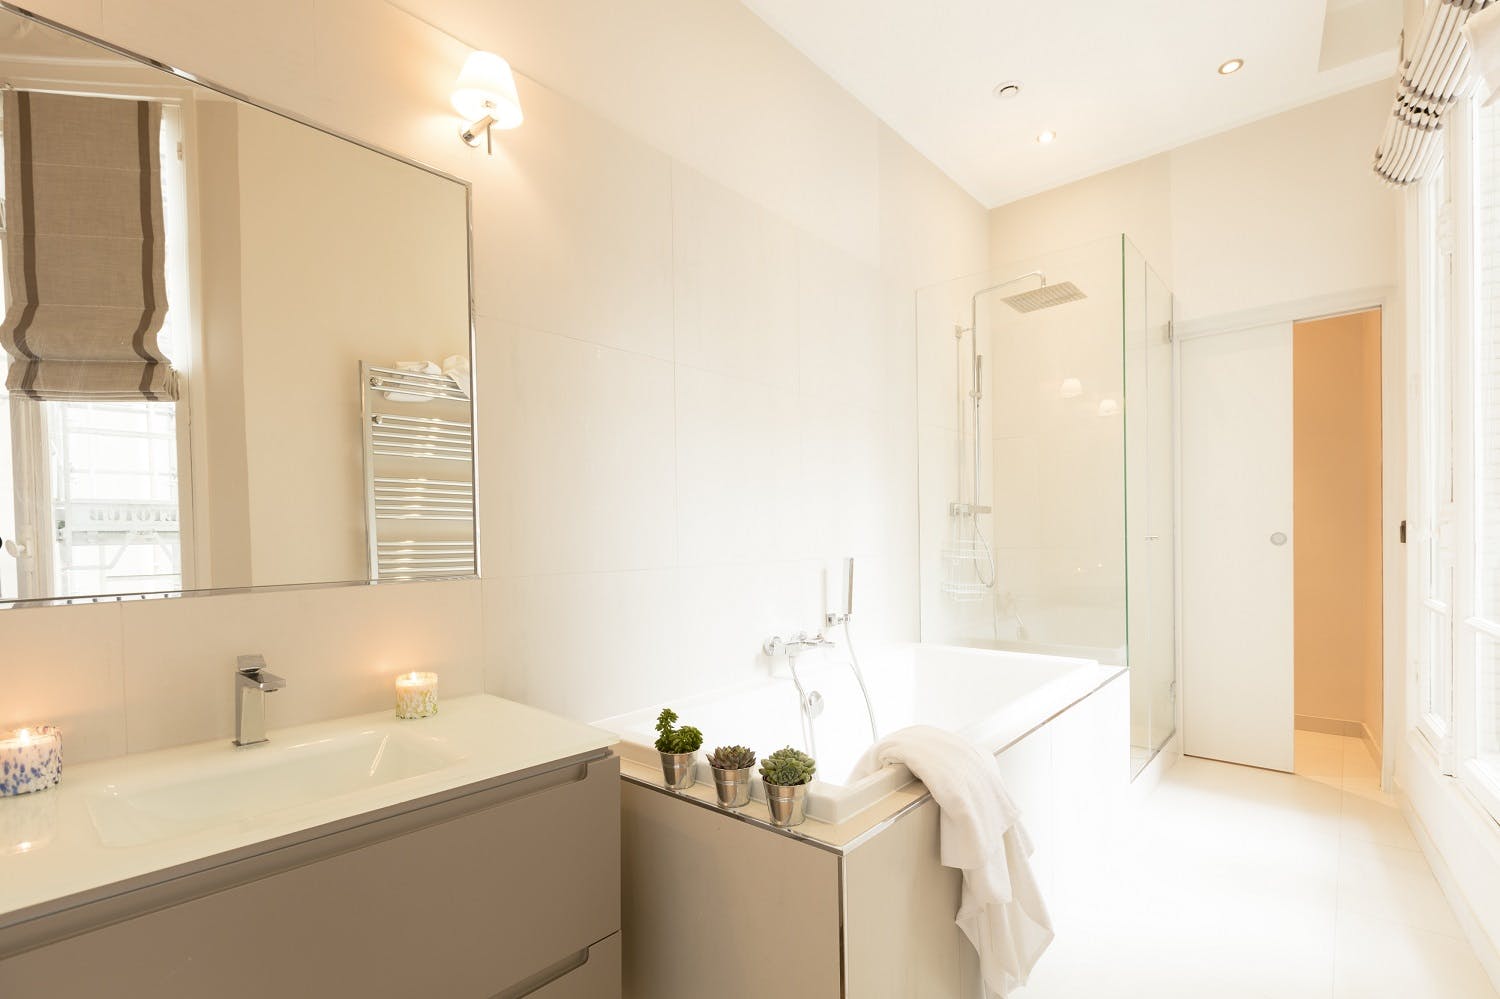 St-Germain Residence - Luxury 4BR - Main Bathroom